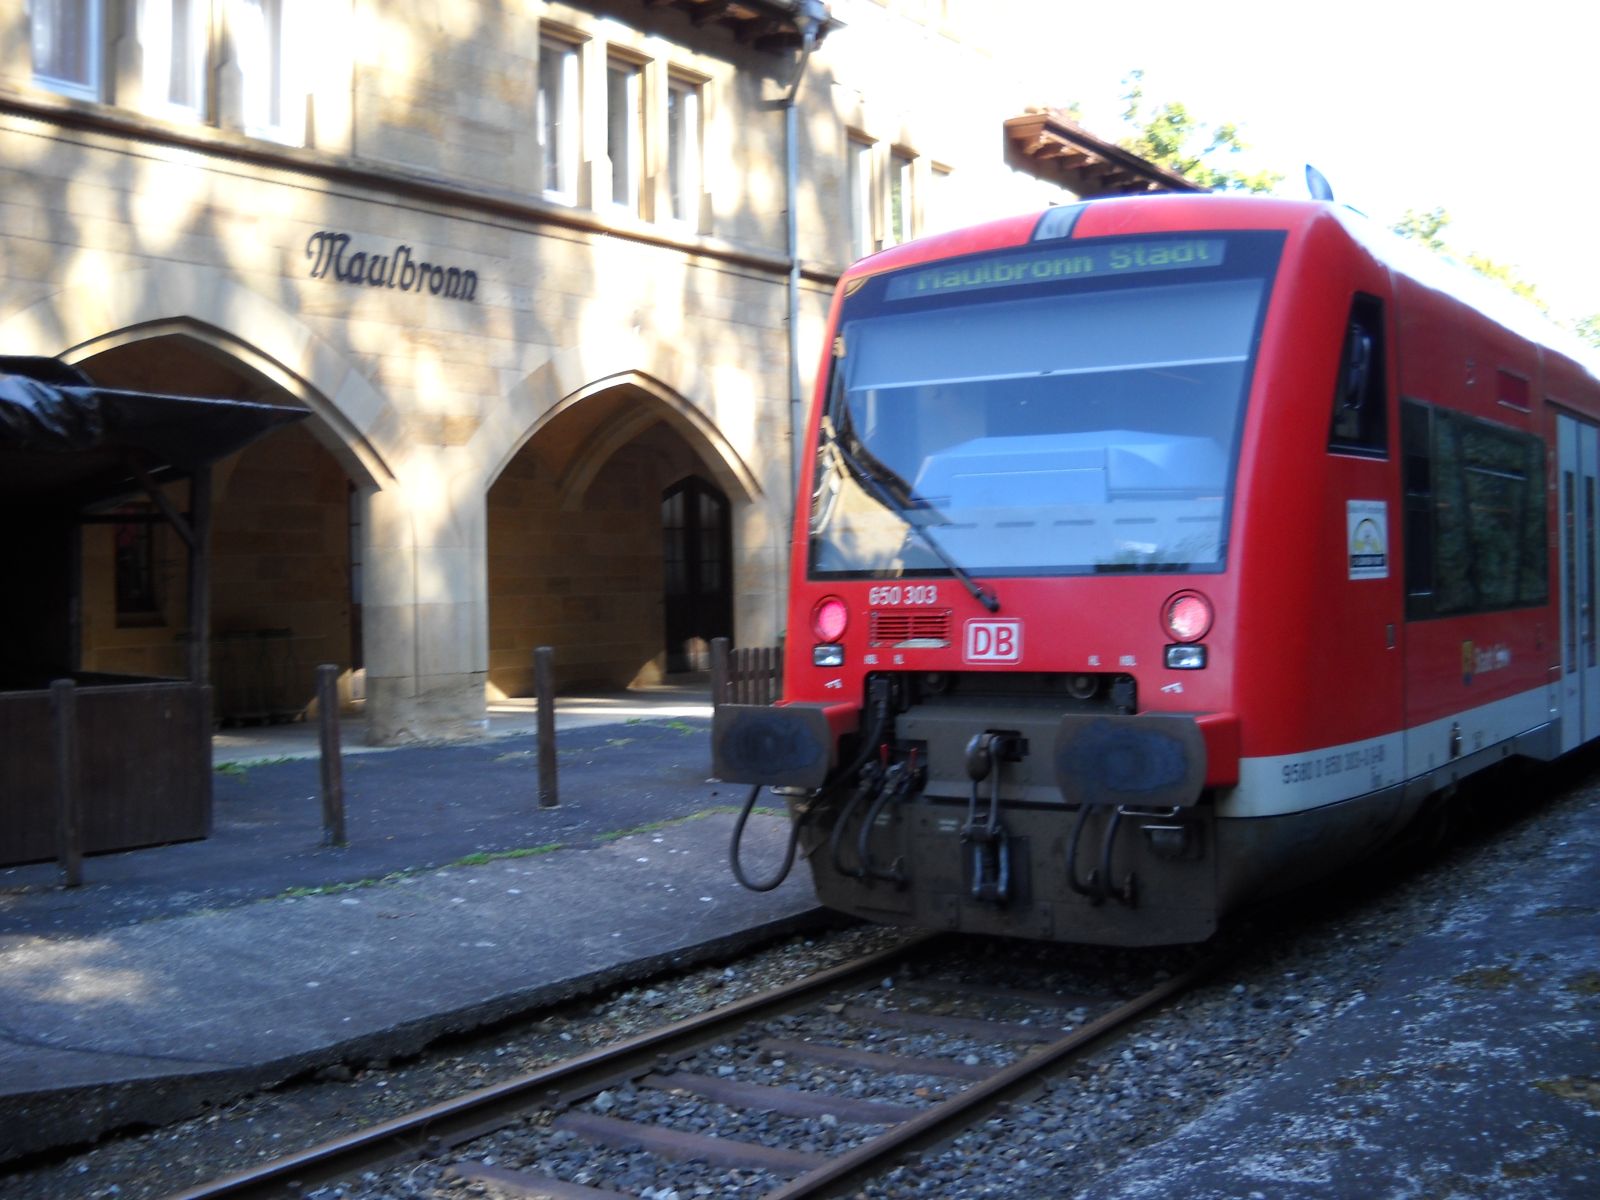  Kulturbahn Klosterstadt Express 